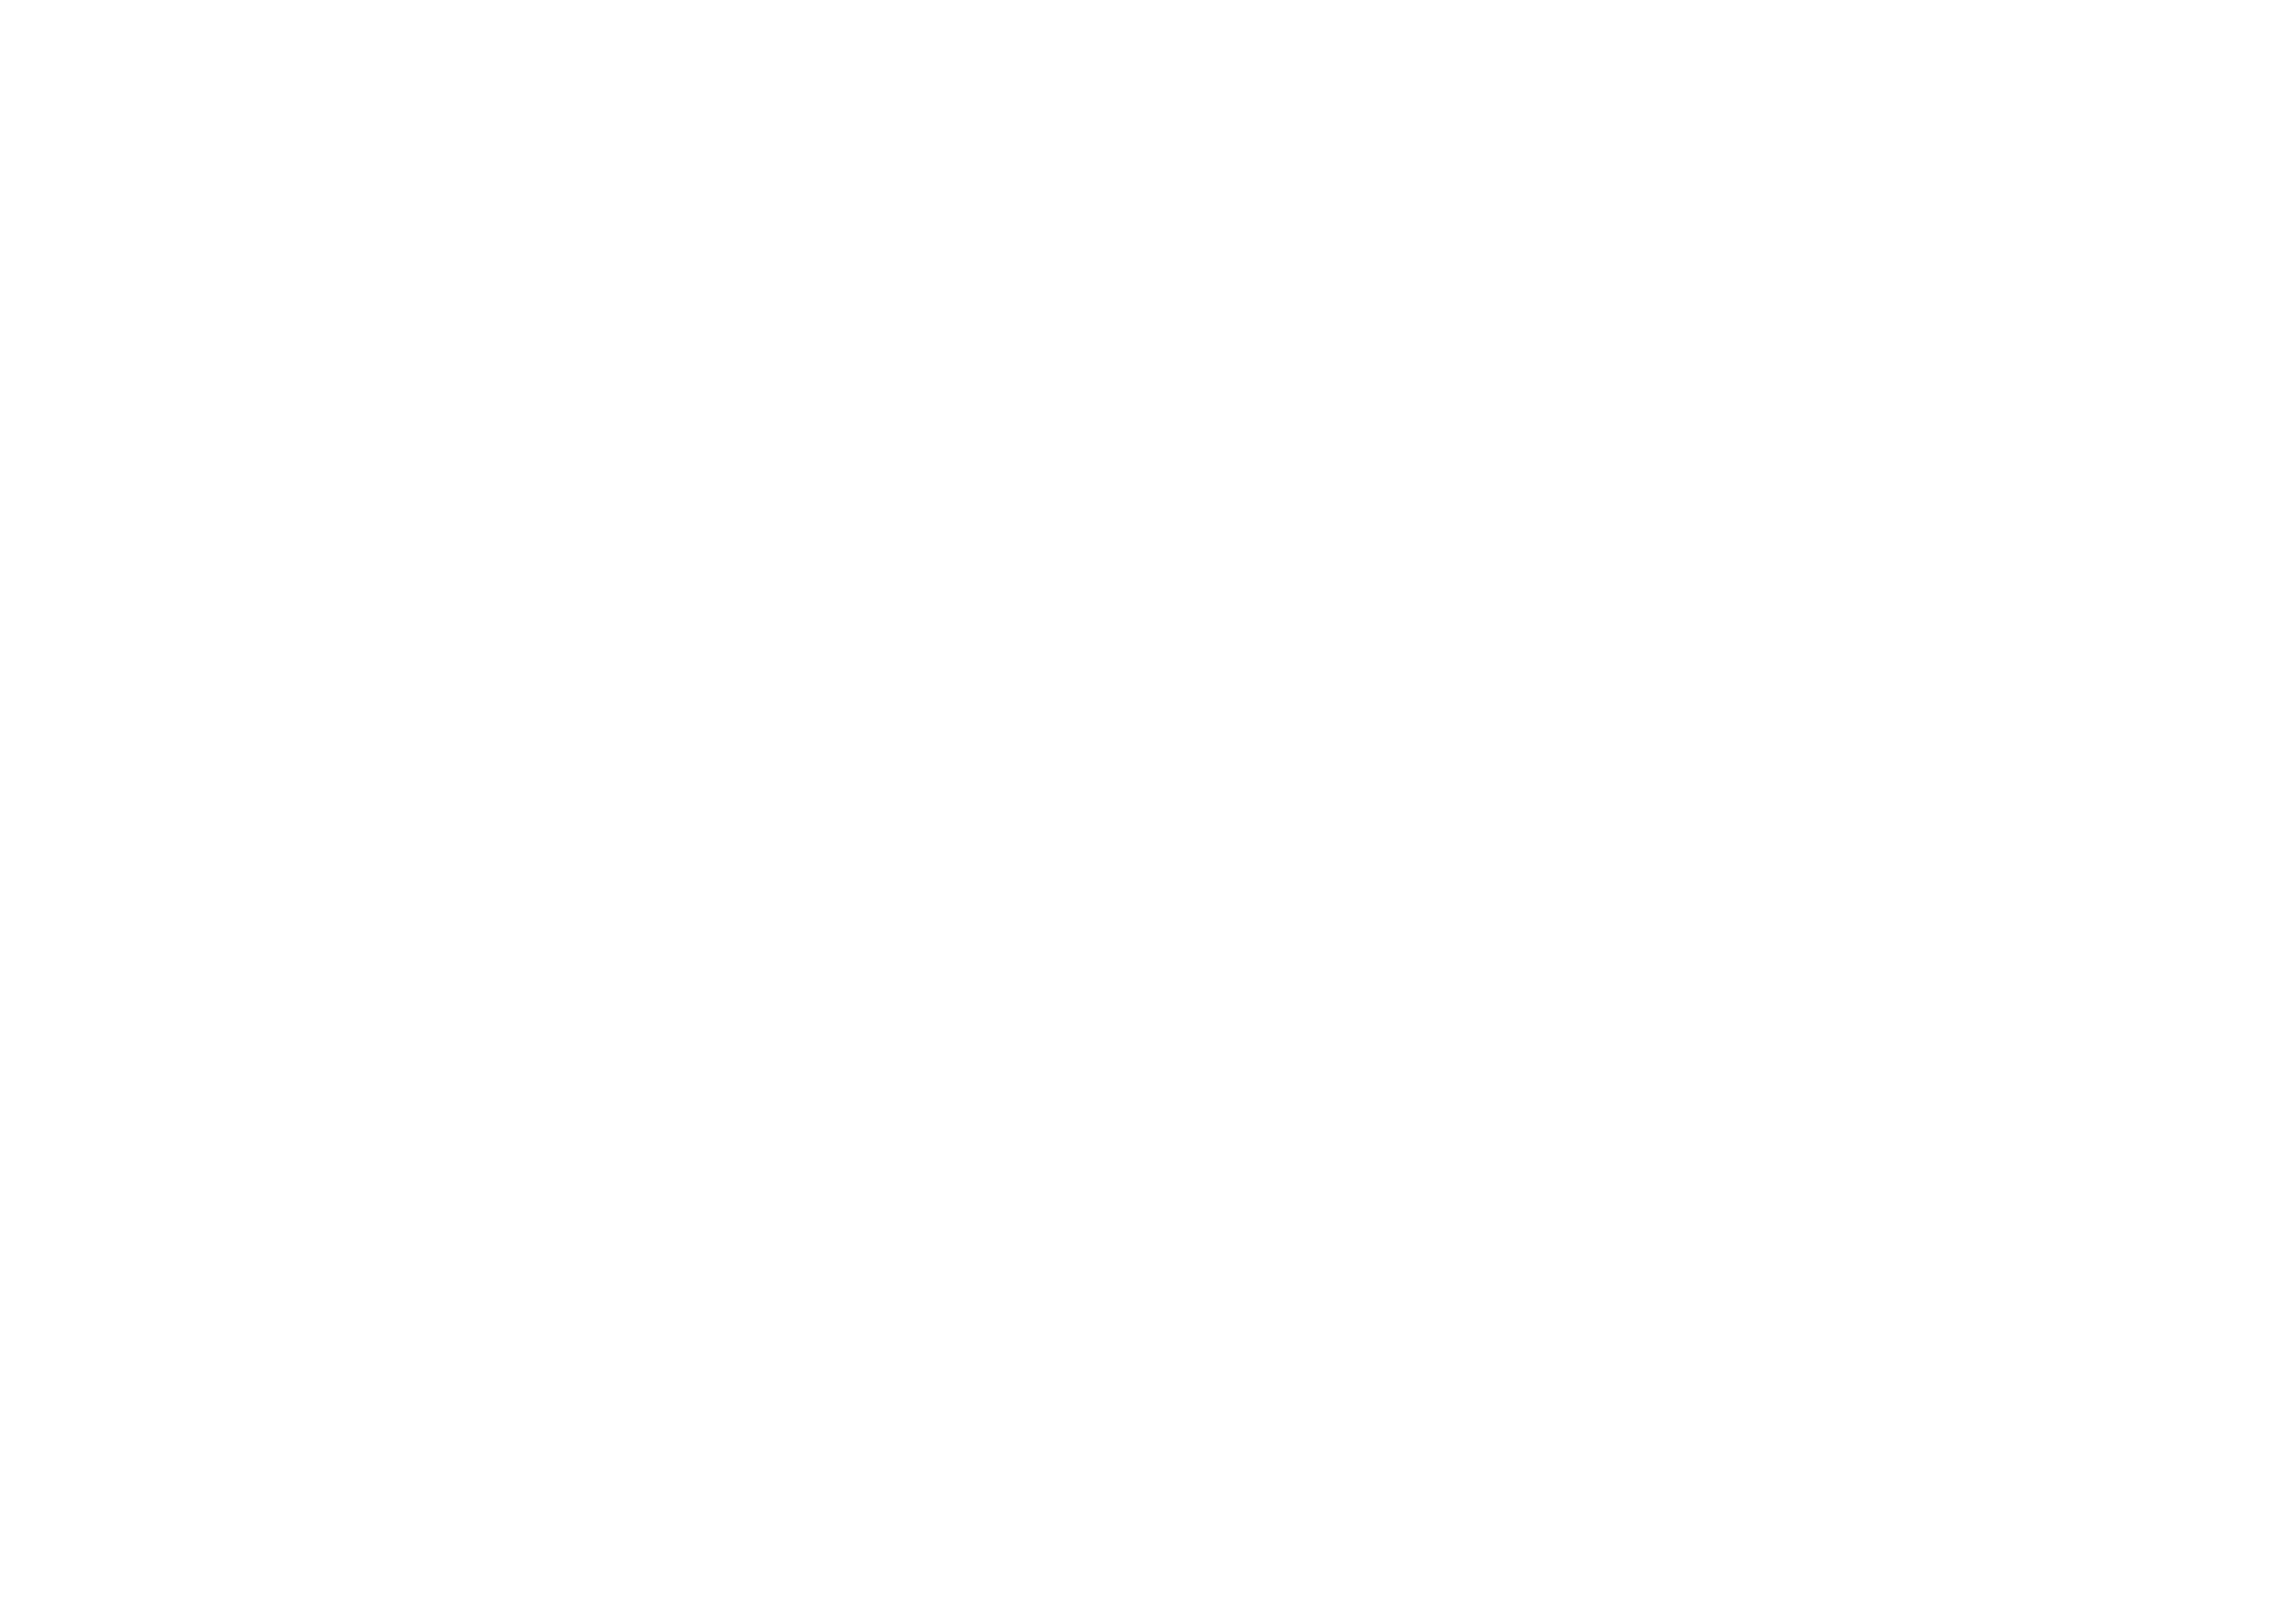 Logo Zuiver